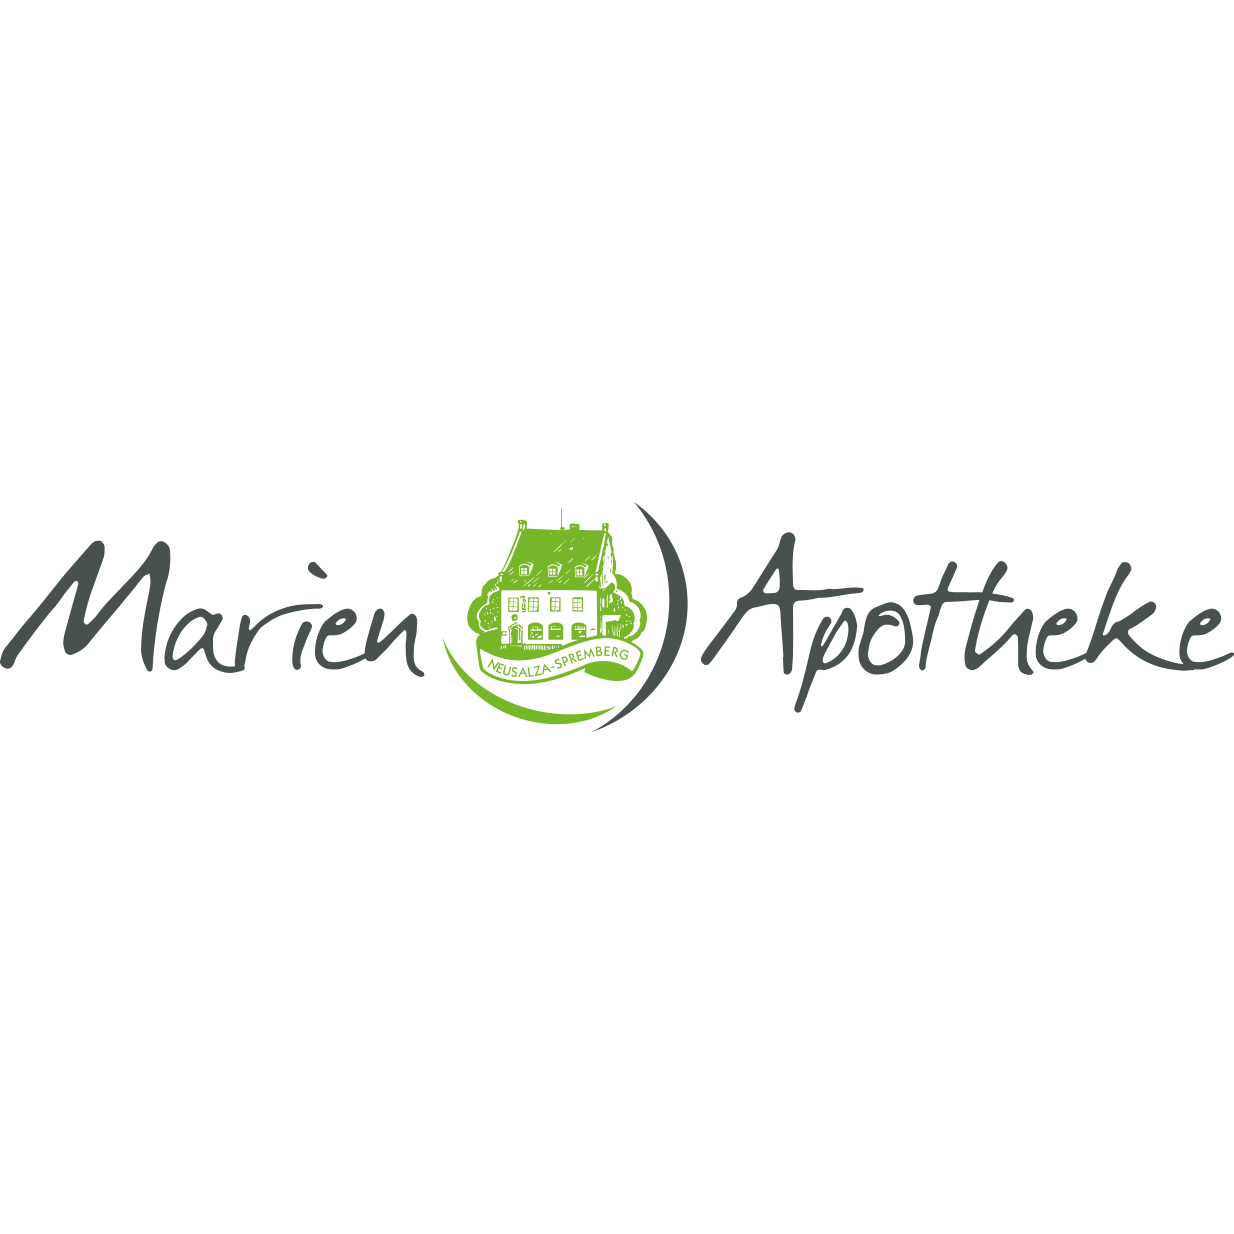 Marien-Apotheke Logo